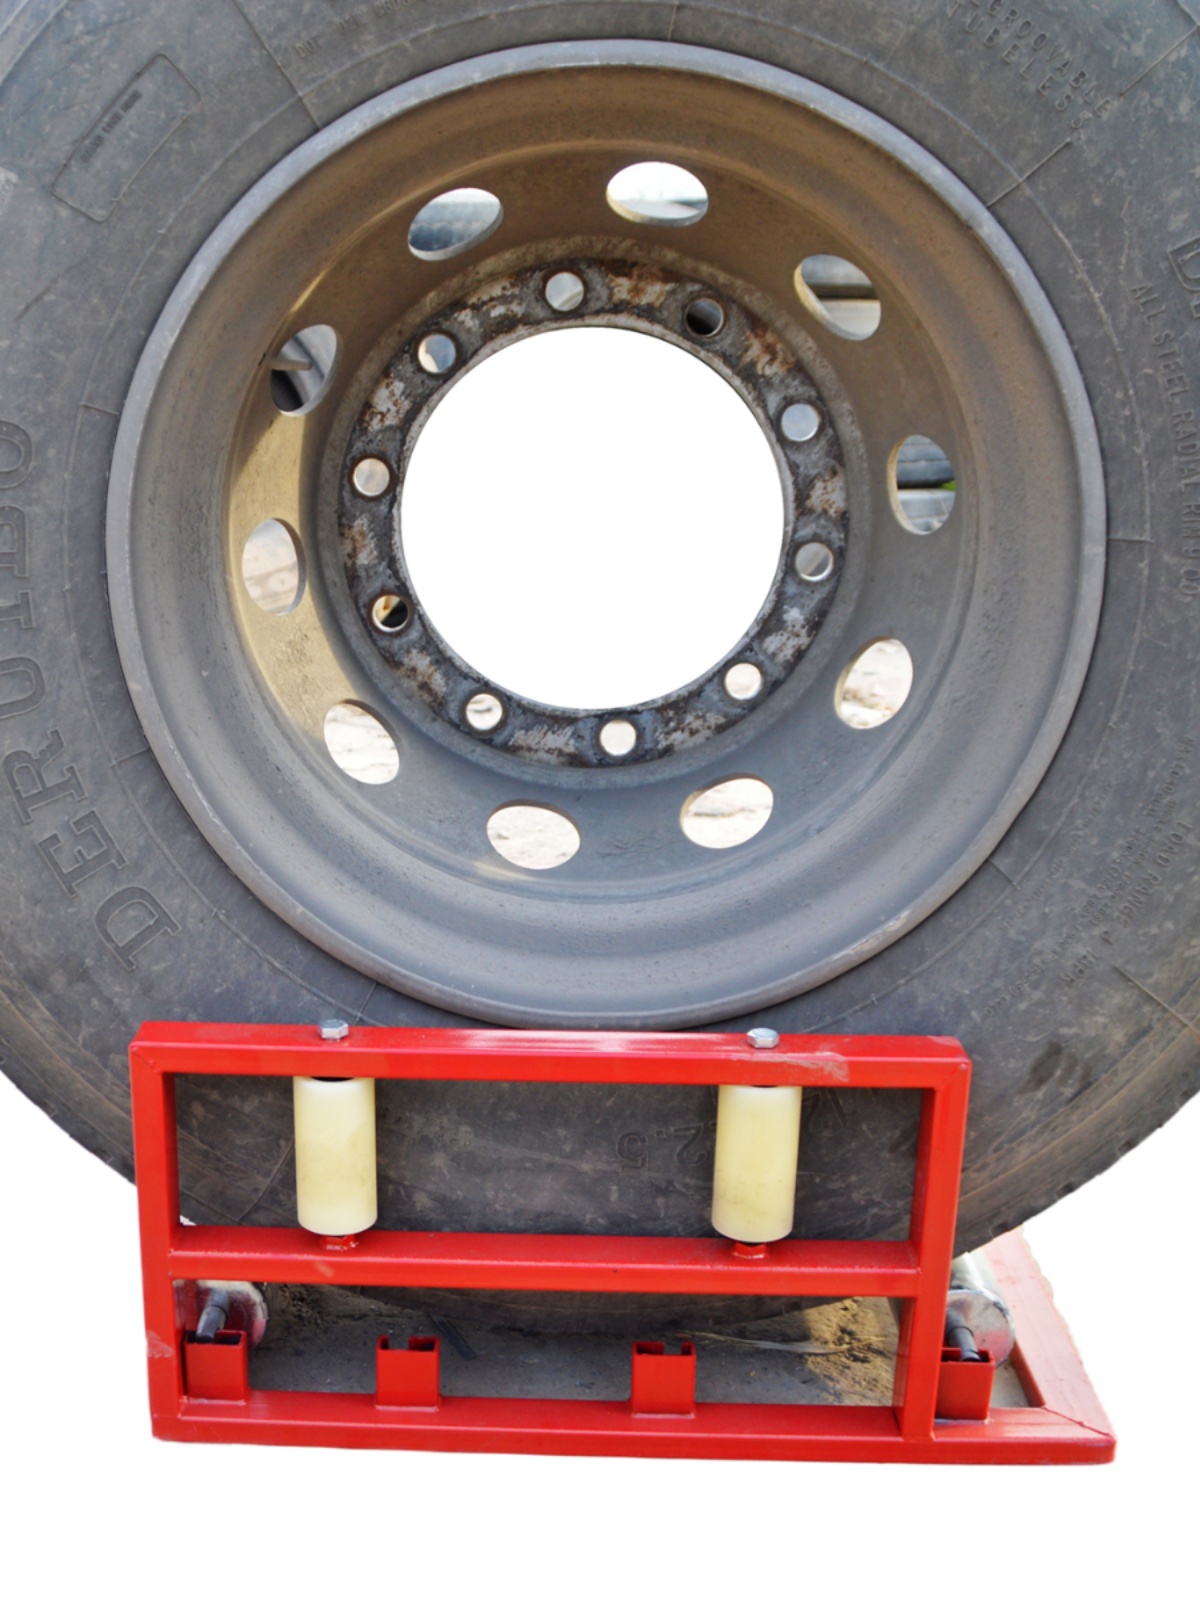 新品轮胎翻滚架旋转补胎工具漏气检测修理辅助大车汽车轮胎清洗架